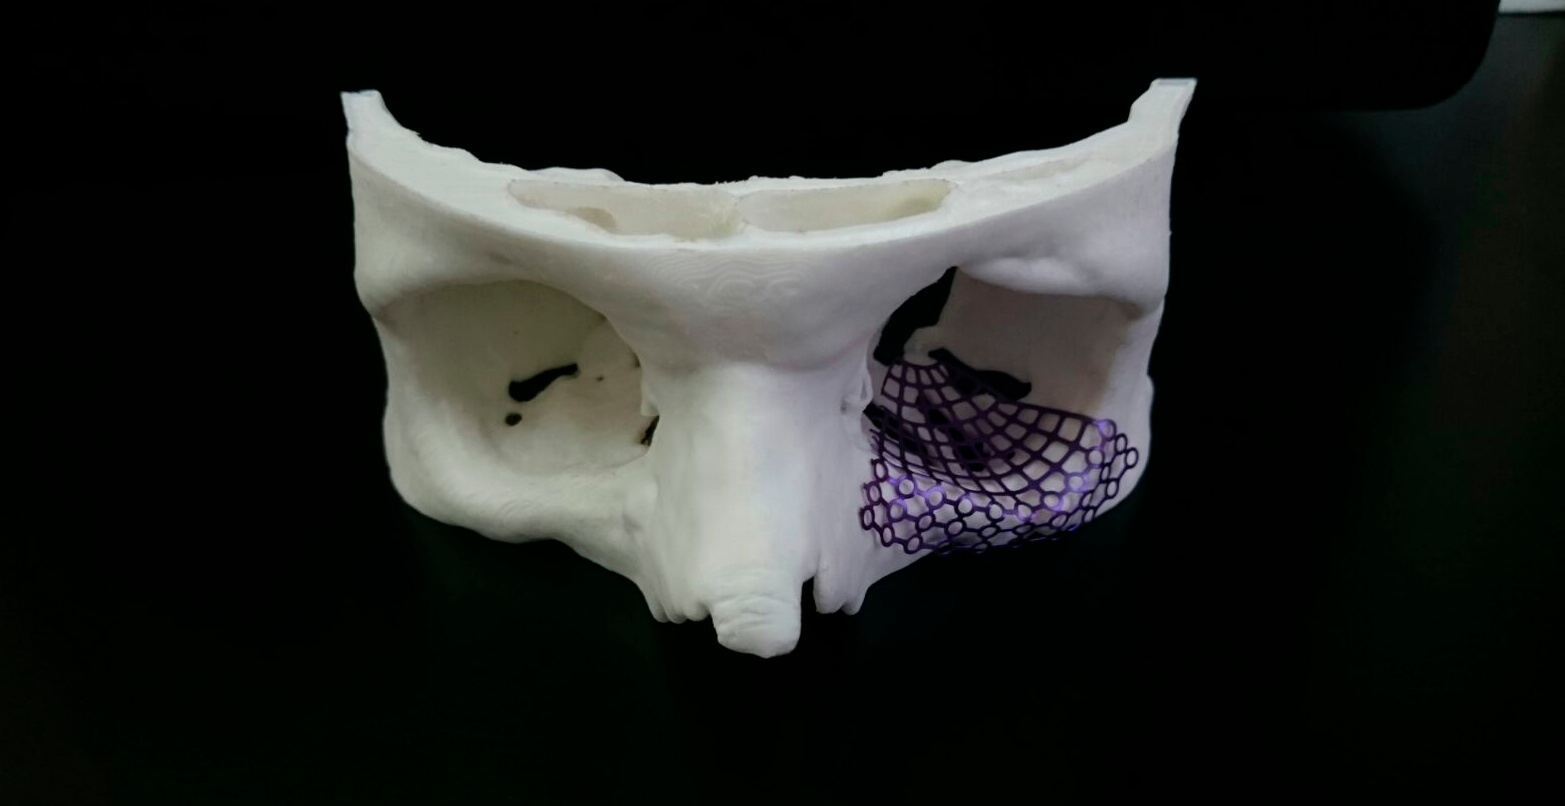 Las impresiones en 3D pueden ayudar al problema del atraso de las cirugías.